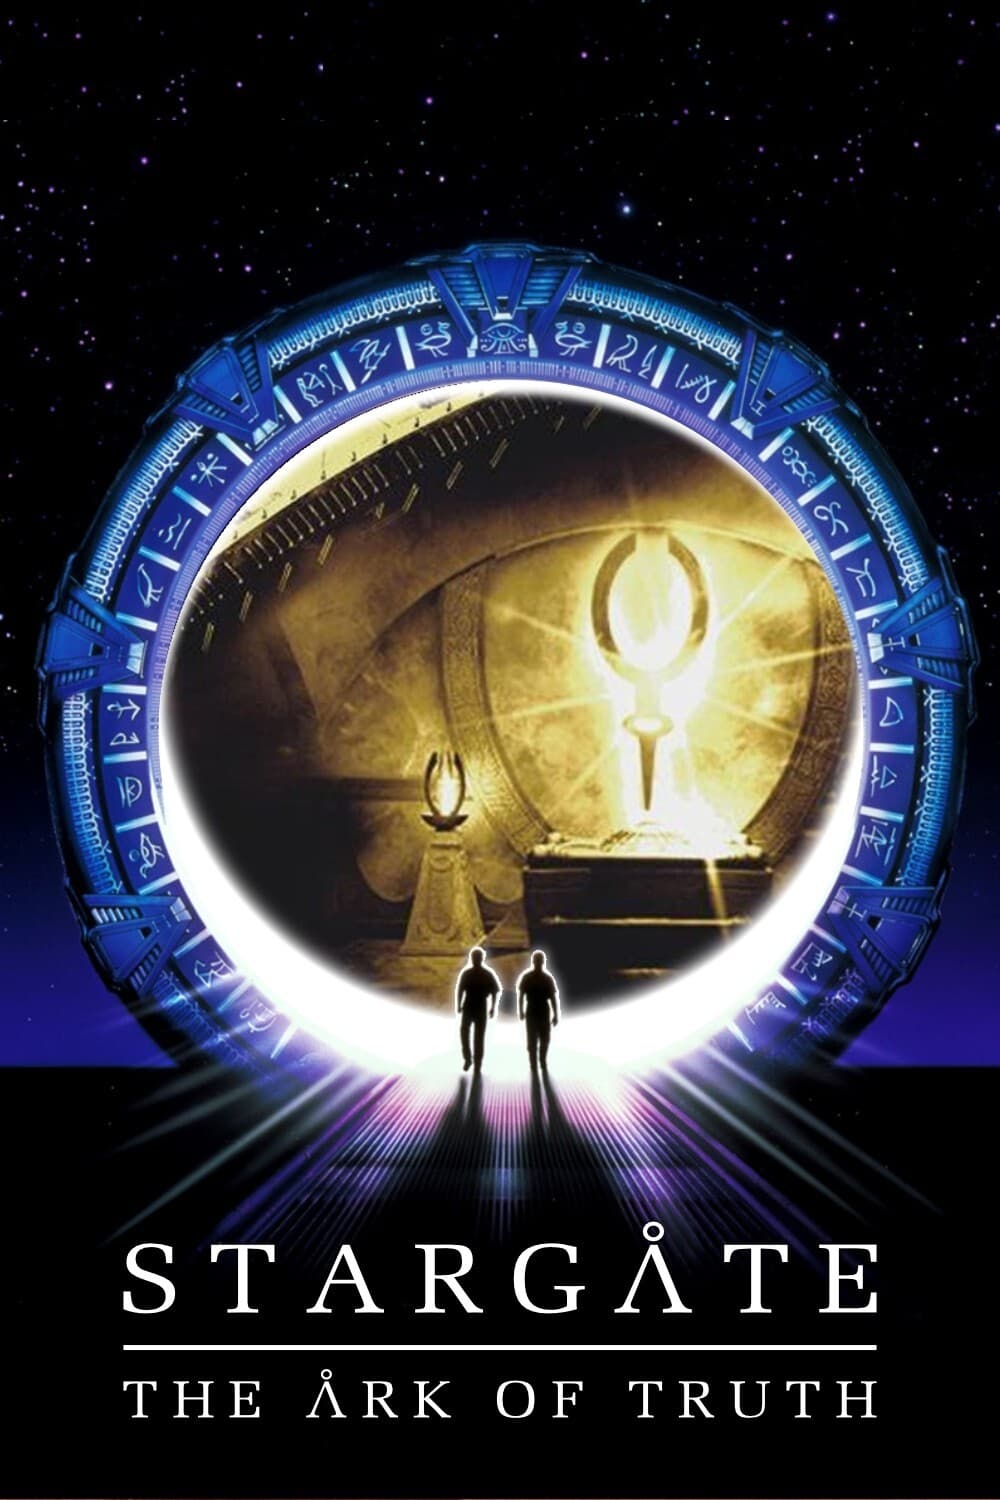 Stargate : L'Arche de vérité (2008)